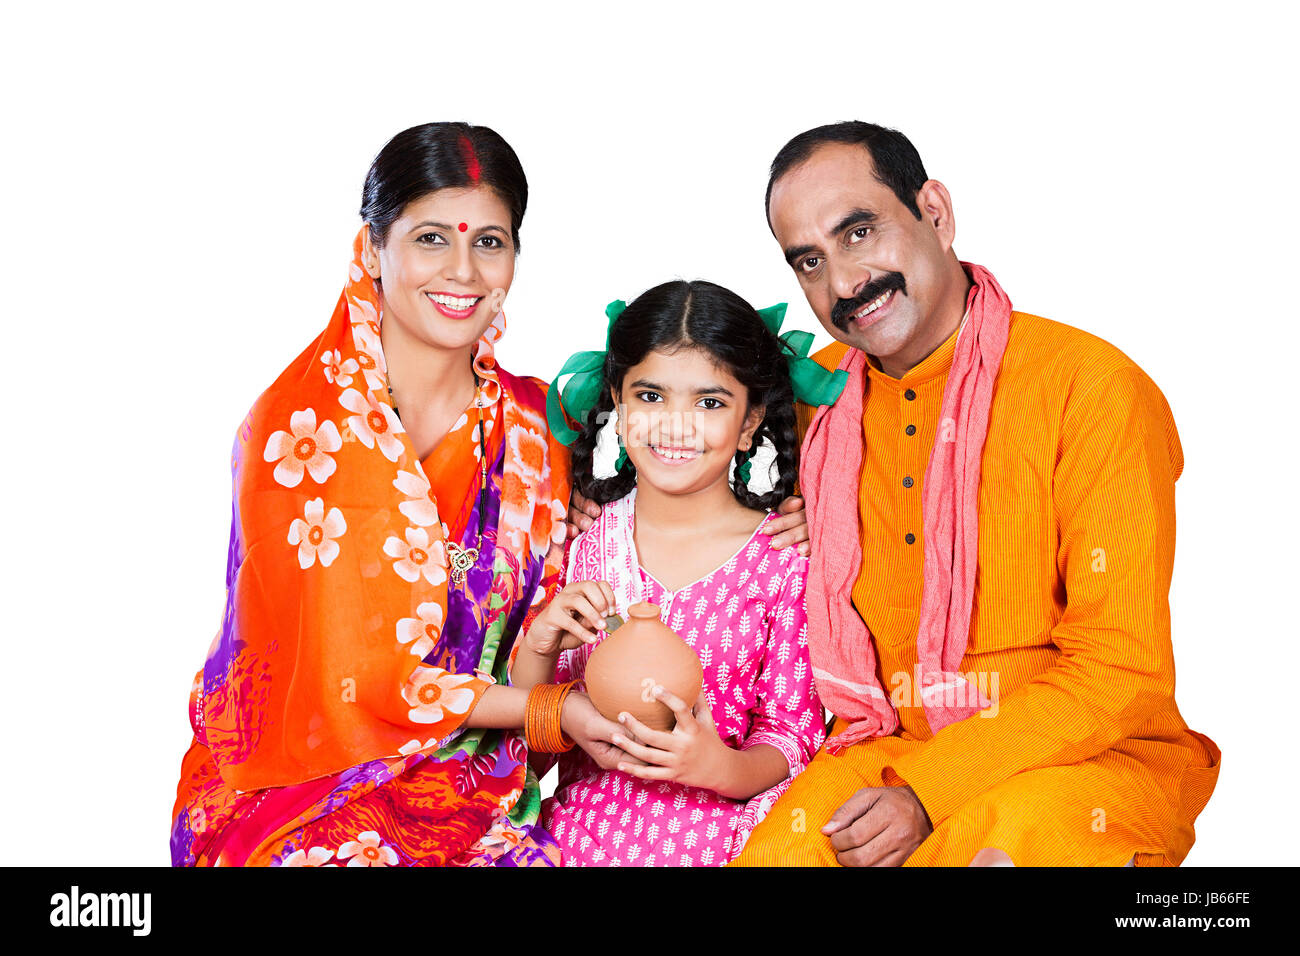 Happy Indischen ländlichen Familie - Eltern und Kind Tochter zusammen zu sitzen und die Münze piggy Bank Geld sparen Stockfoto